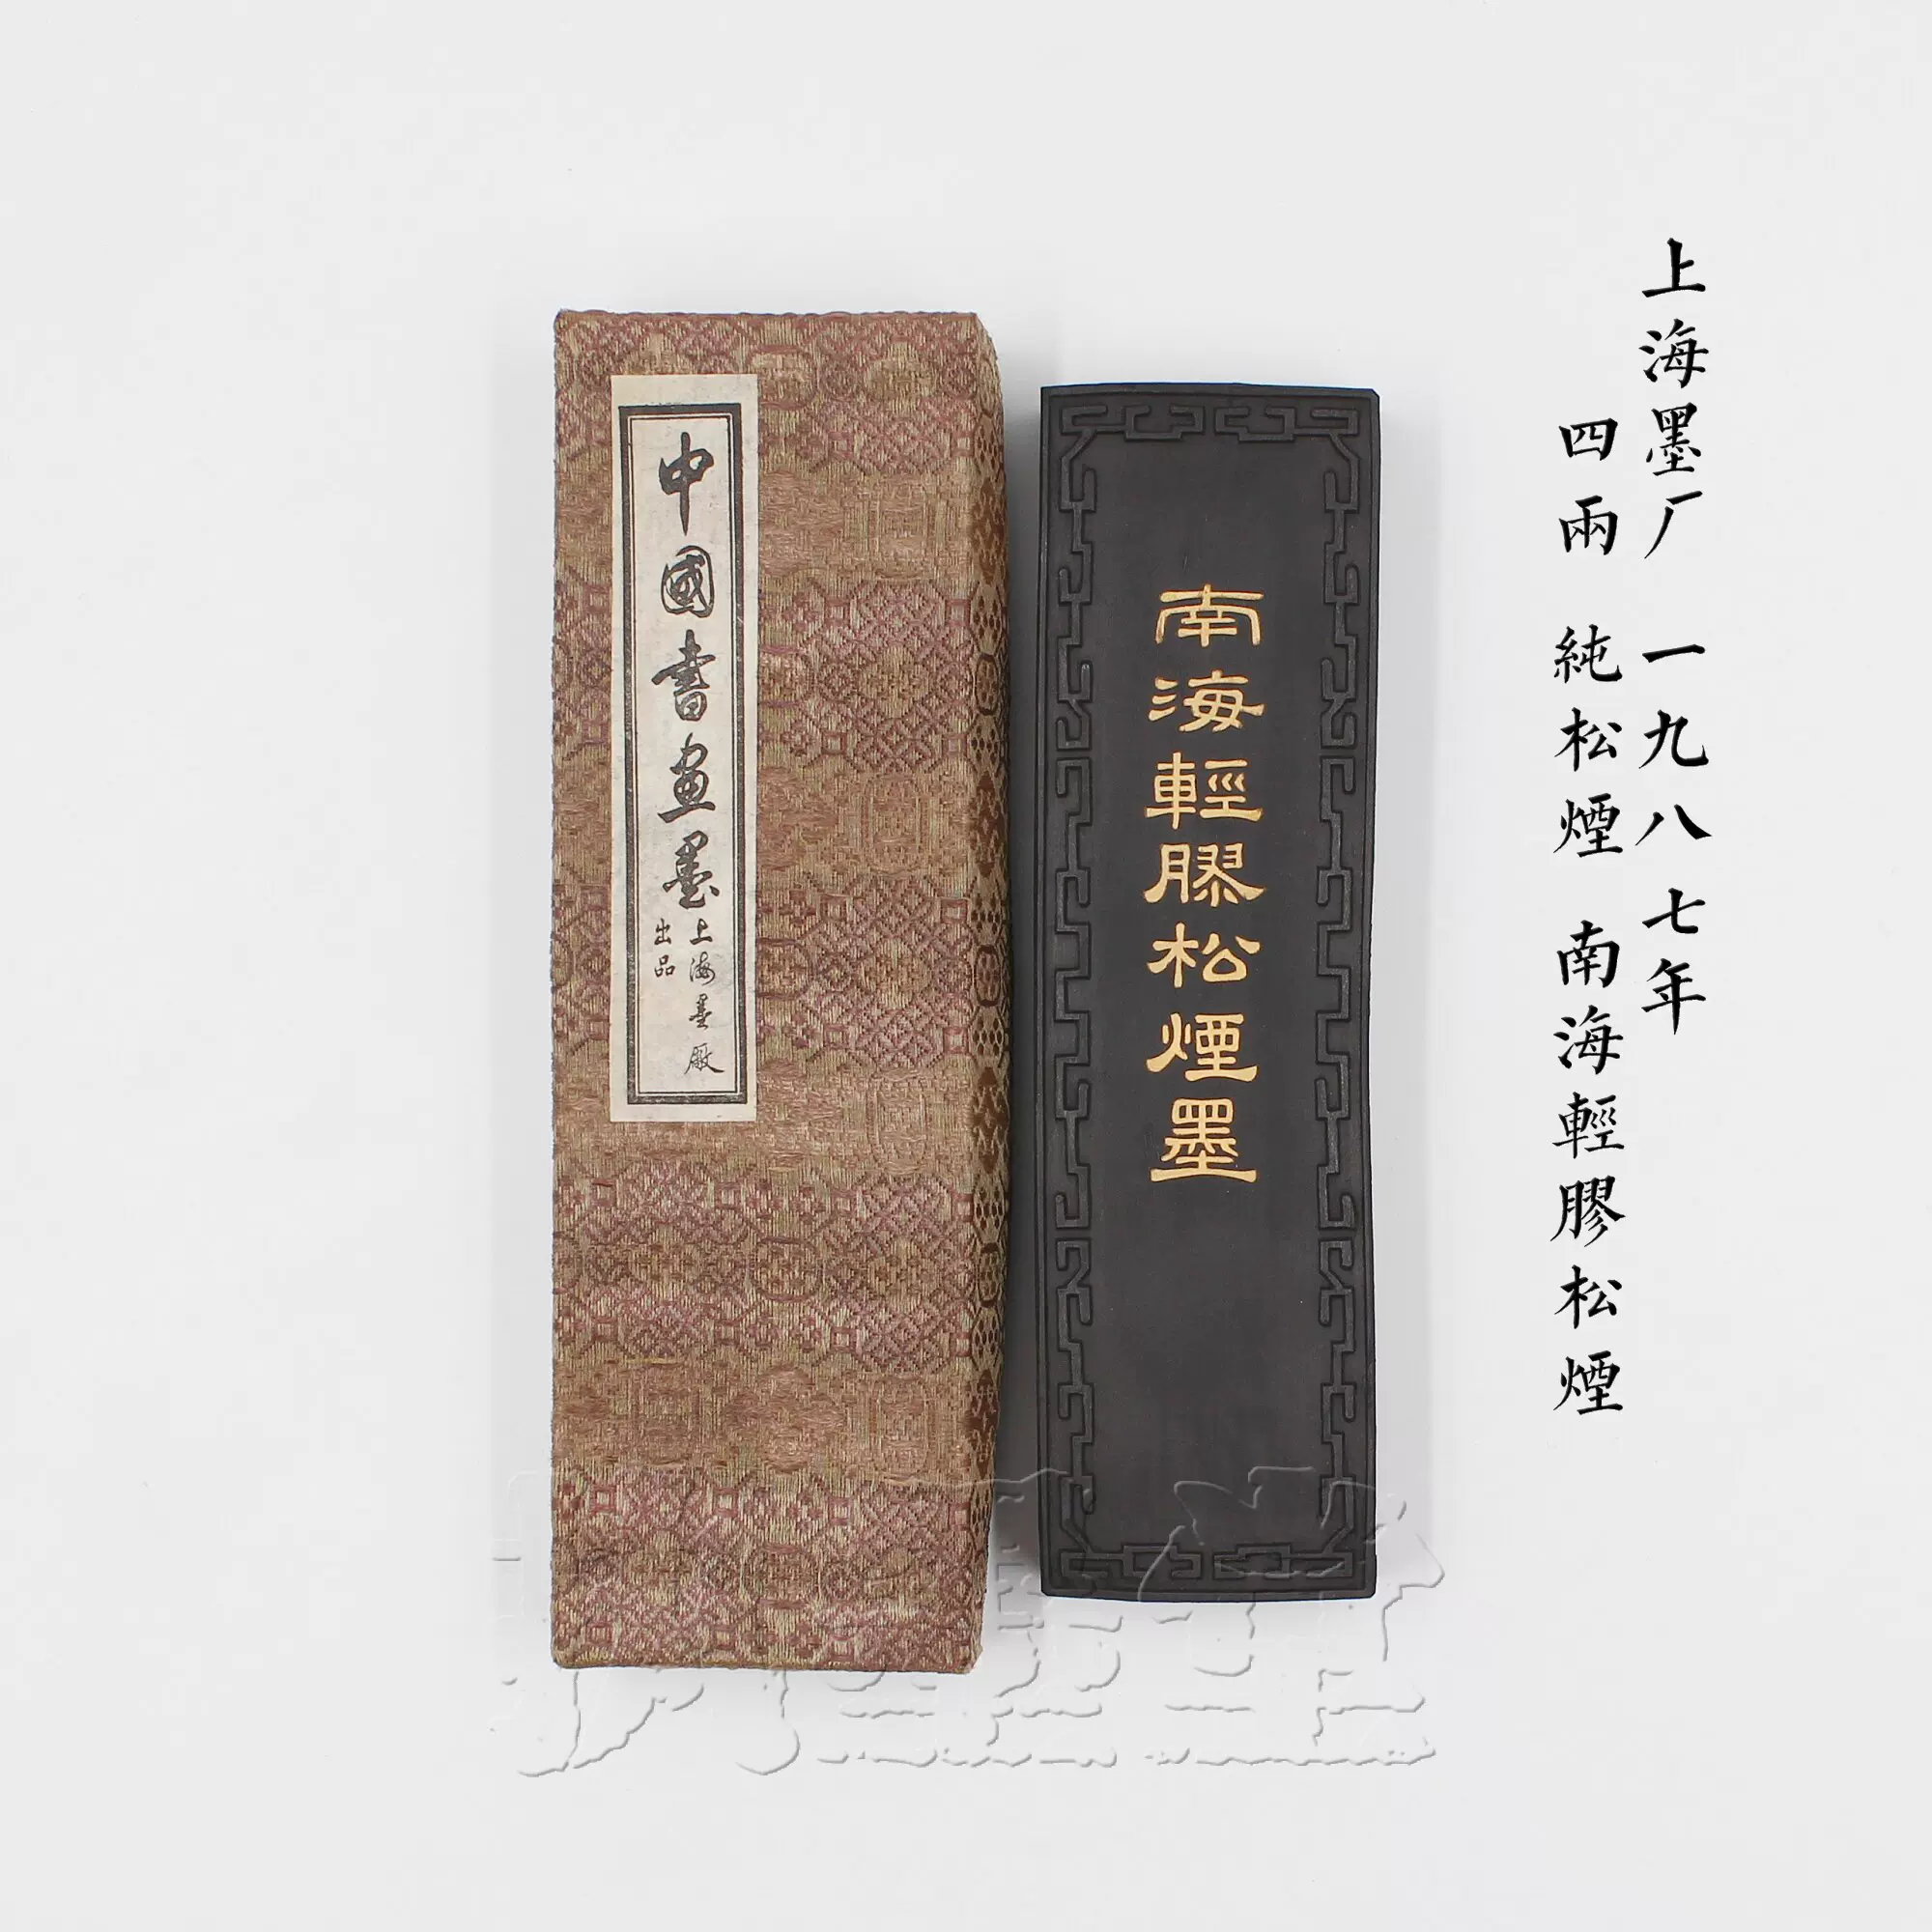 南海轻胶松烟上海墨厂87年4两纯松烟墨块实用文房大墨锭书画墨条-Taobao